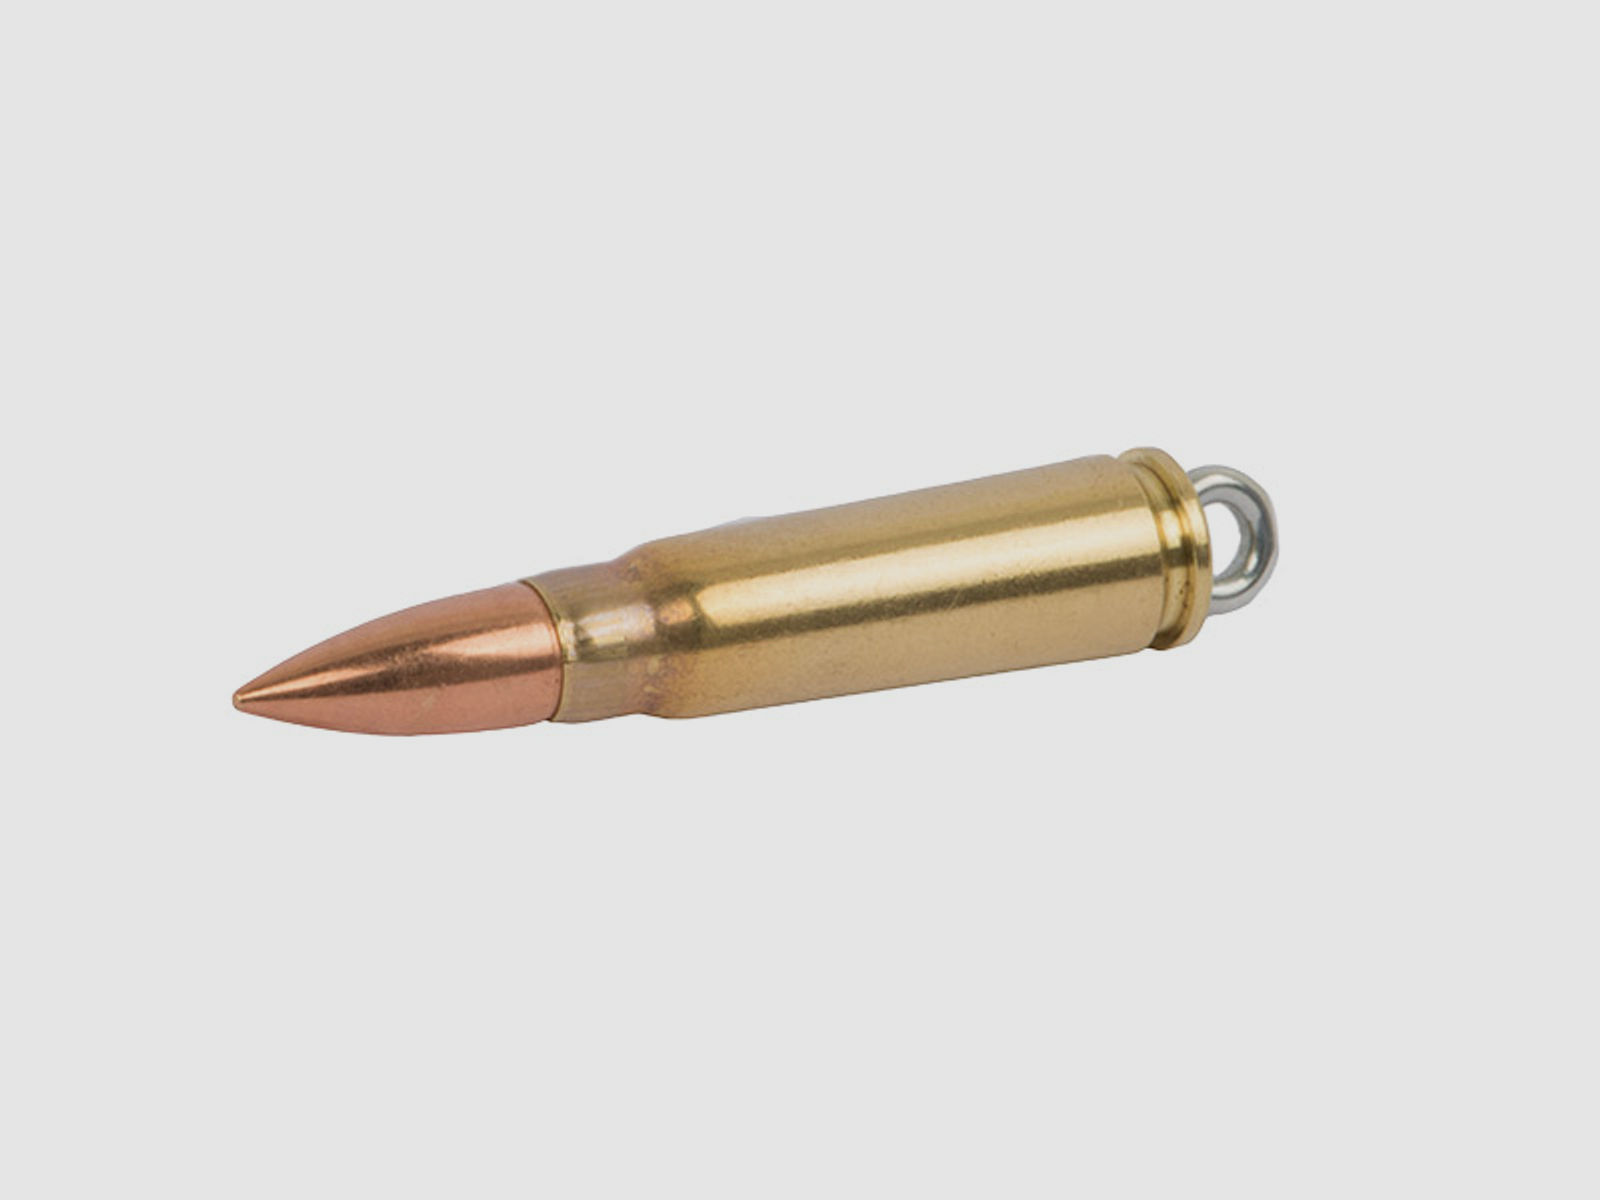 SchlĂĽsselanhĂ¤nger Kaliber 7,62 x 39 mm Kurzpatrone M 43 MessinghĂĽlse handgefertigt